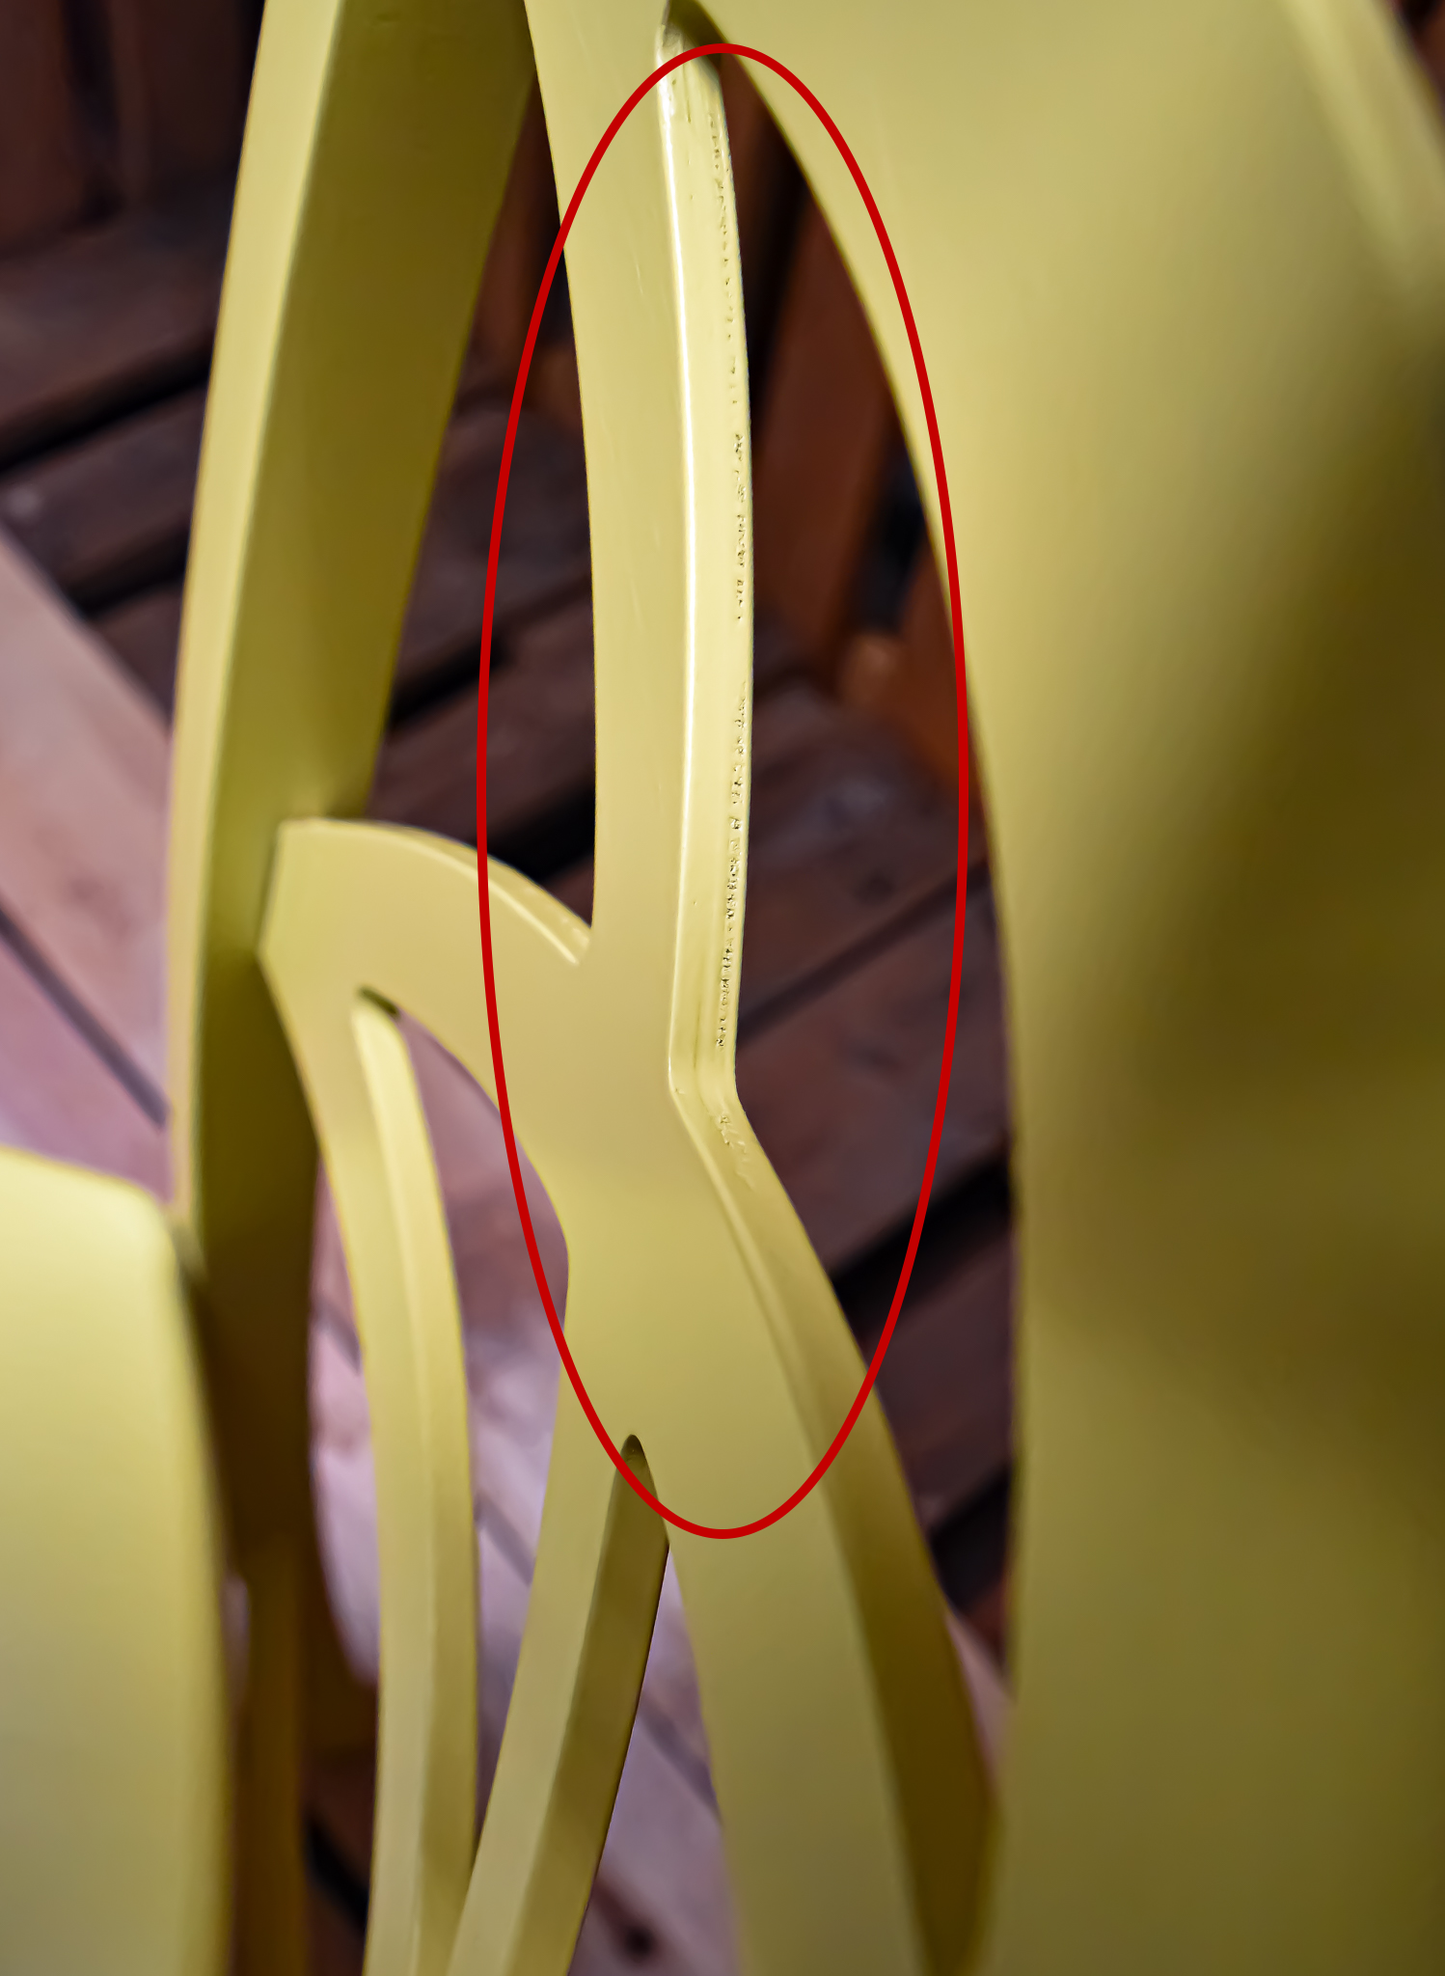 Stock sedie outlet modello 33 colore giallo seduta in legno